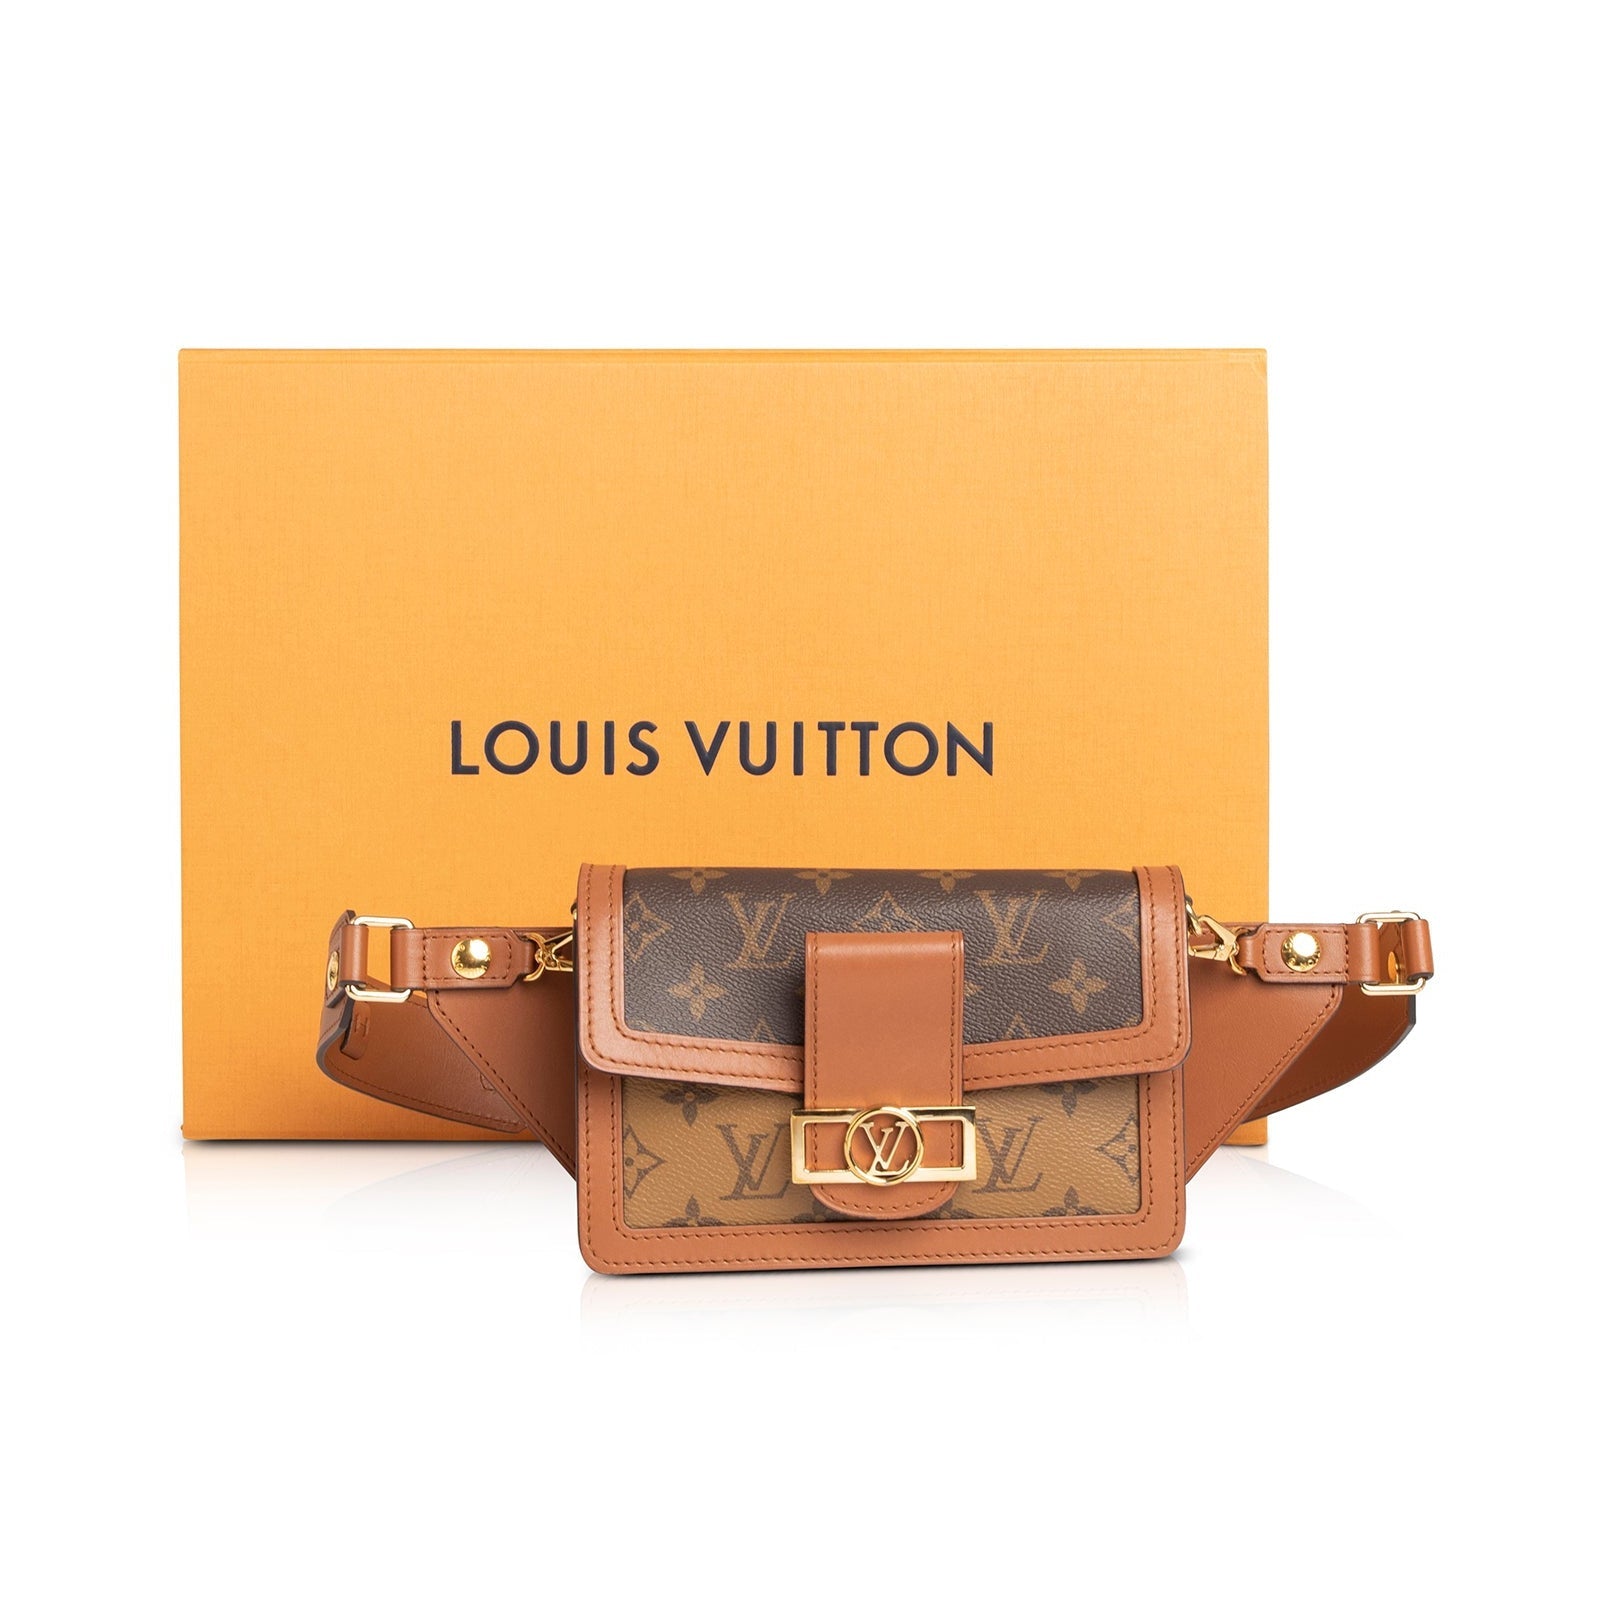 Buy LOUIS VUITTON Bumbag Dauphine Monogram Reverse M44586 Body Bag